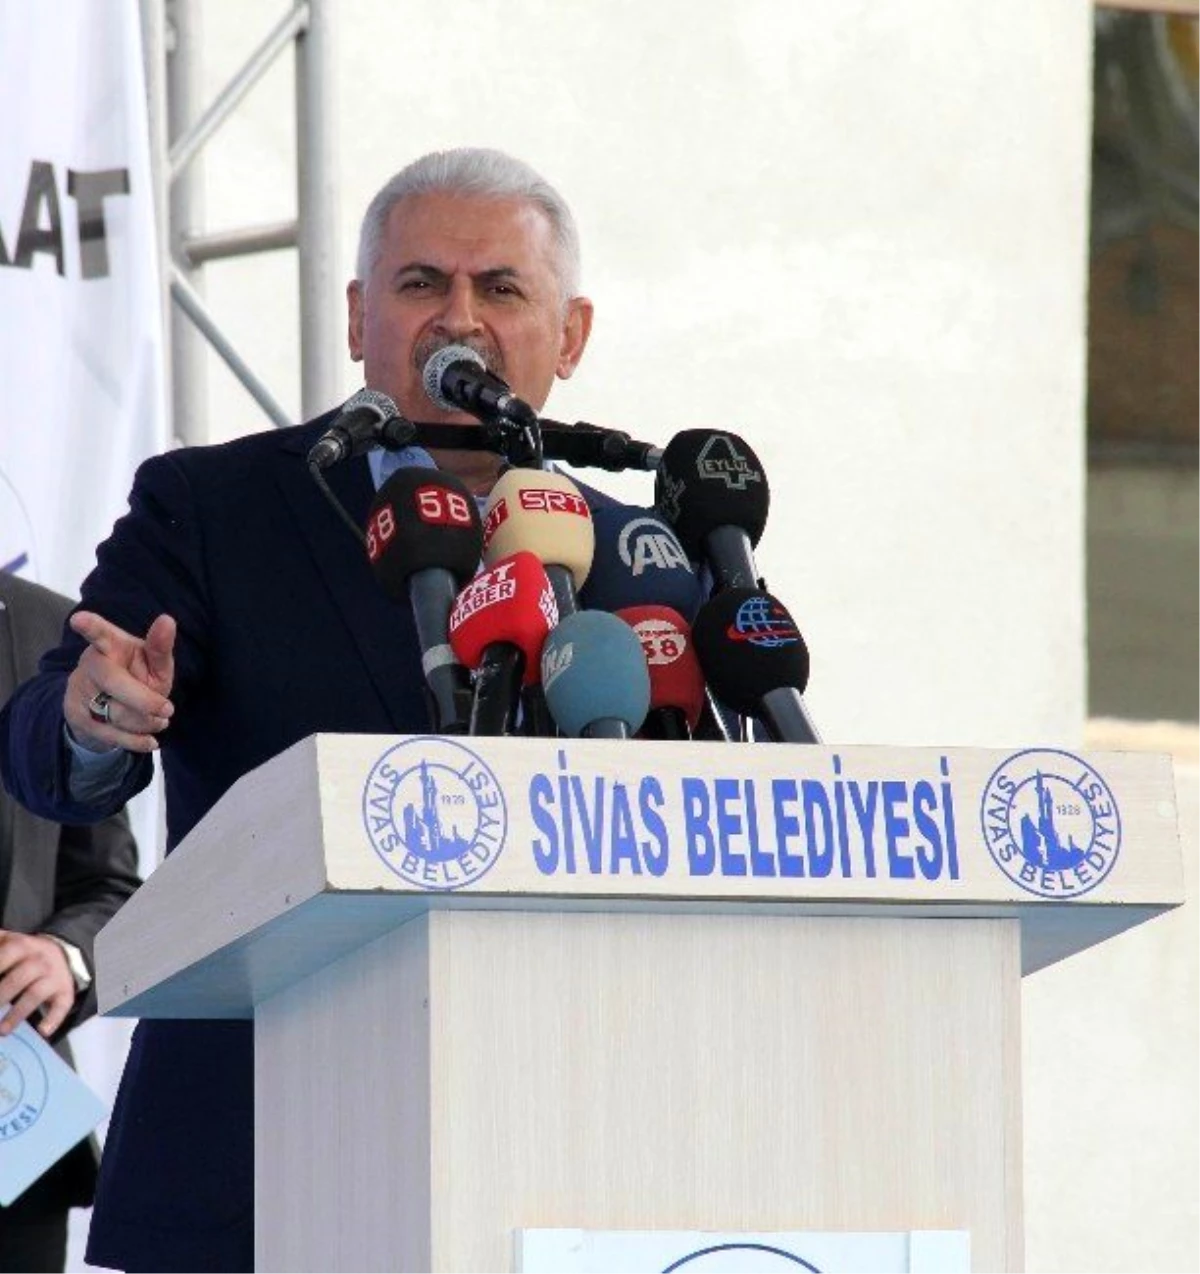 Ulaştırma Bakanı Yıldırım: "Açılan Her Tünel Terör Örgütüne Vurulan En Büyük Darbedir"